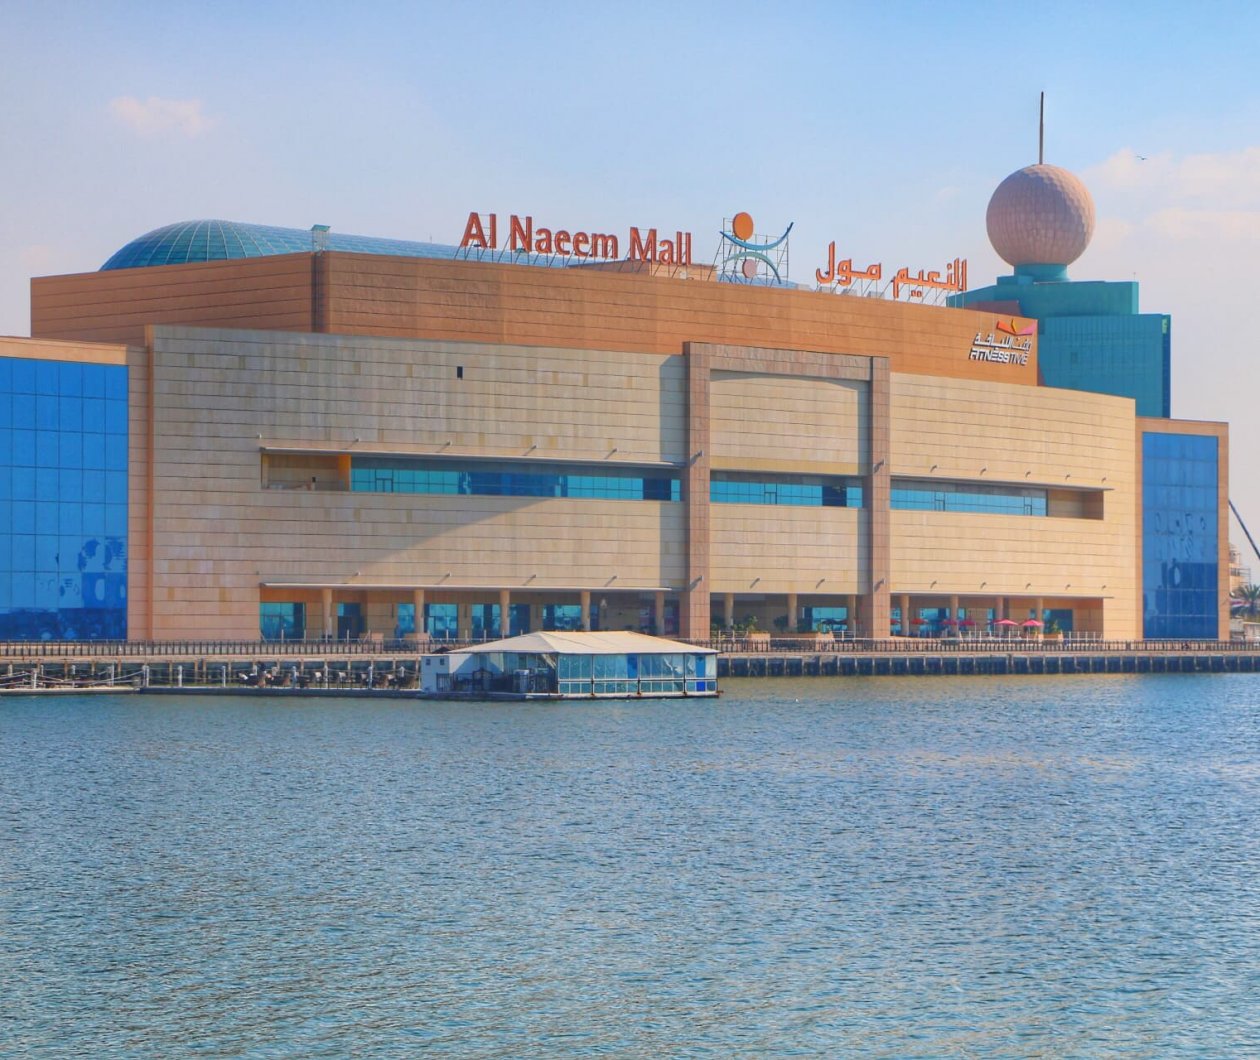 Al Naeem Mall